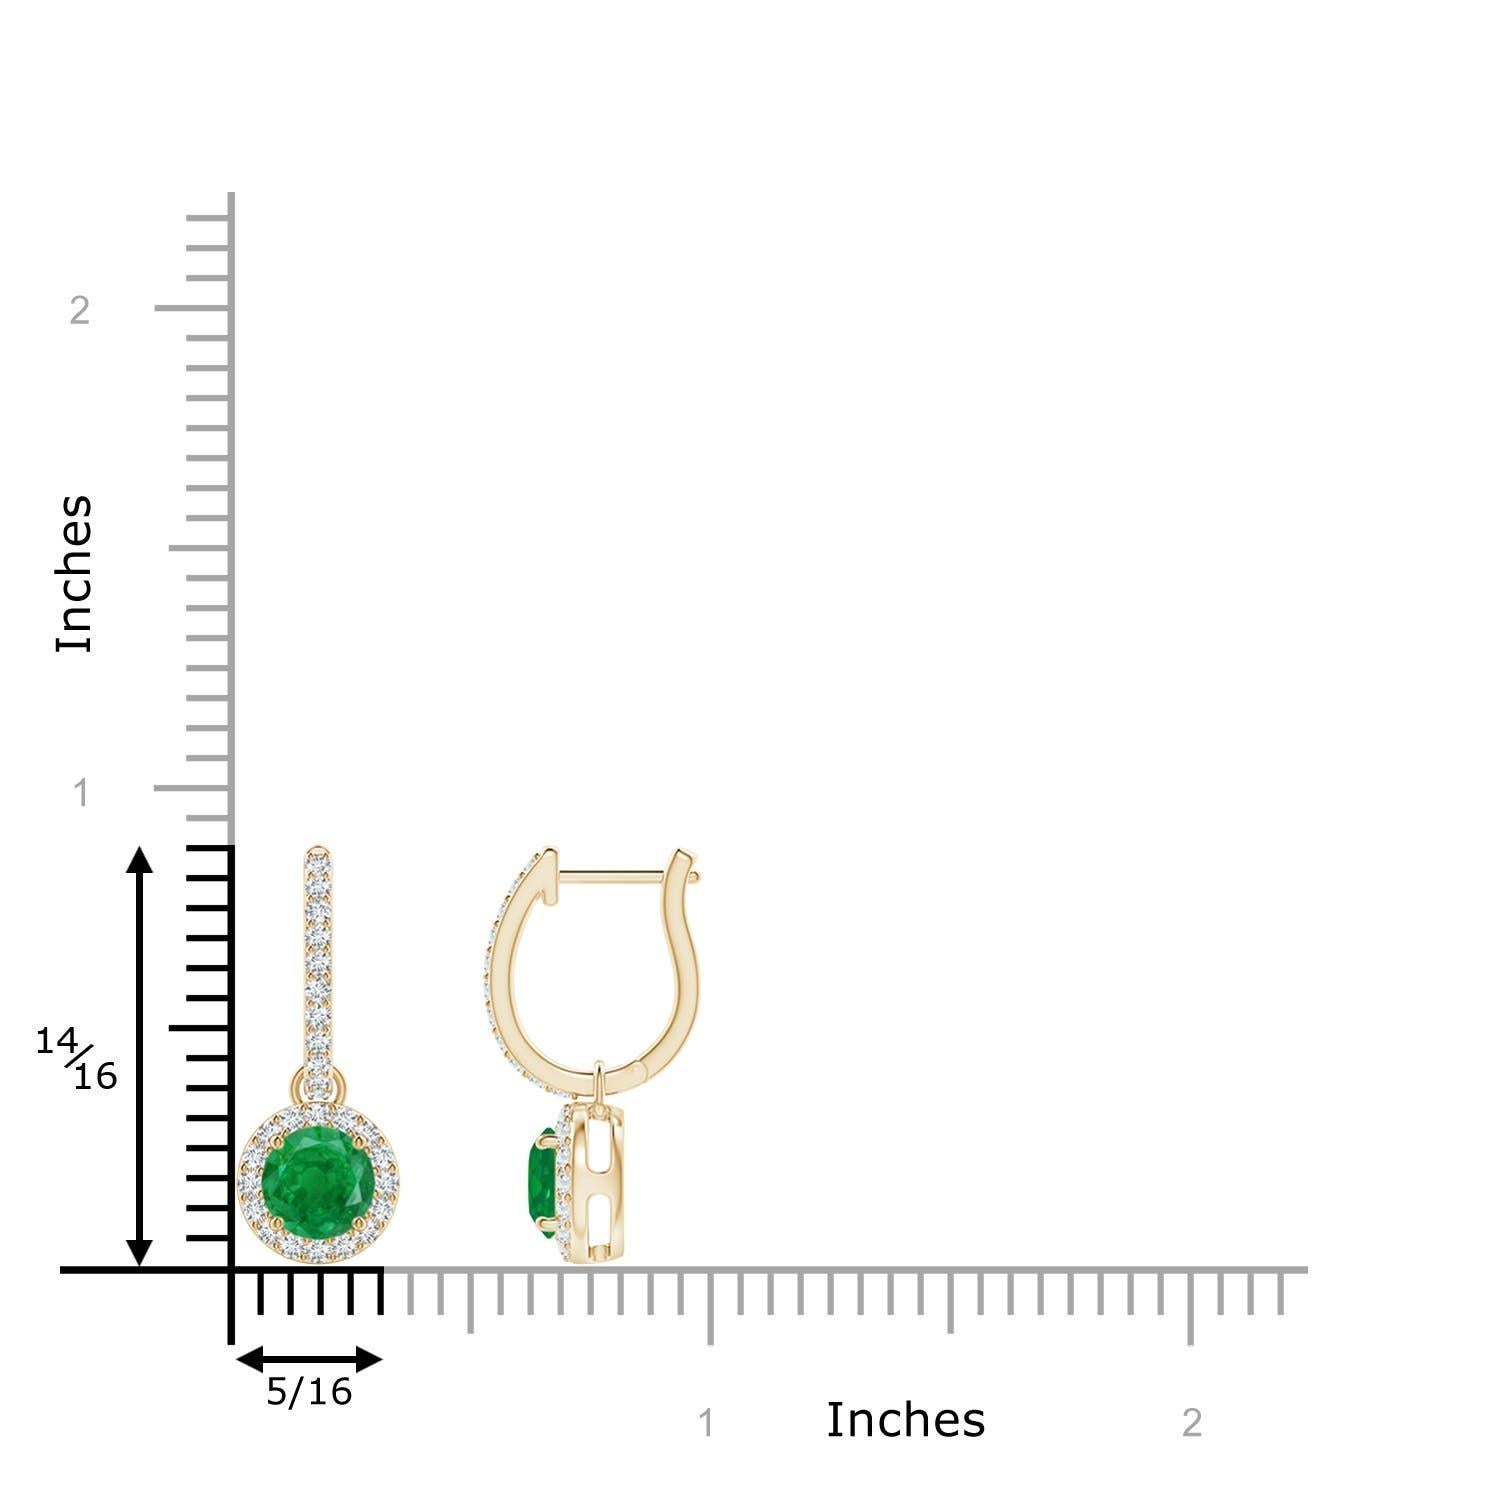 Eingebettet in einen schimmernden Halo aus runden Diamanten sind runde, sattgrüne Smaragde in Zackenfassung. Die diamantenen Akzente auf dem Ring verleihen diesen Smaragd-Ohrringen aus 14-karätigem Gelbgold einen zusätzlichen Hauch von Eleganz.
Der